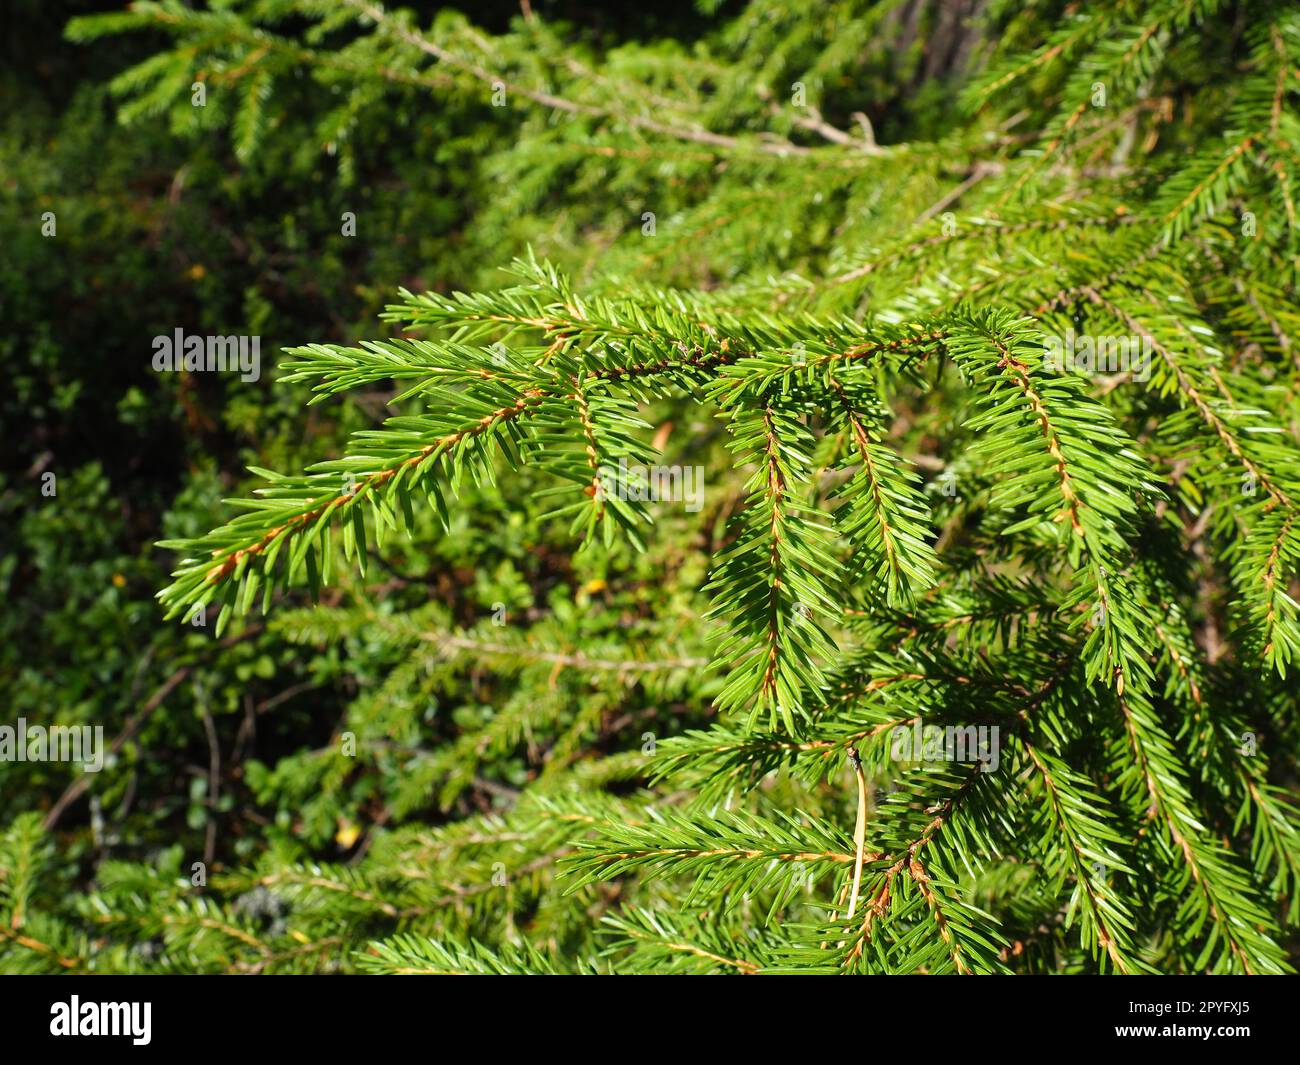 Épinette de Picea, genre de conifères à feuilles persistantes de la famille des pinacées. Forêt de conifères en Carélie. Branches et aiguilles d'épicéa. Le problème de l'écologie, de la déforestation et du changement climatique Banque D'Images